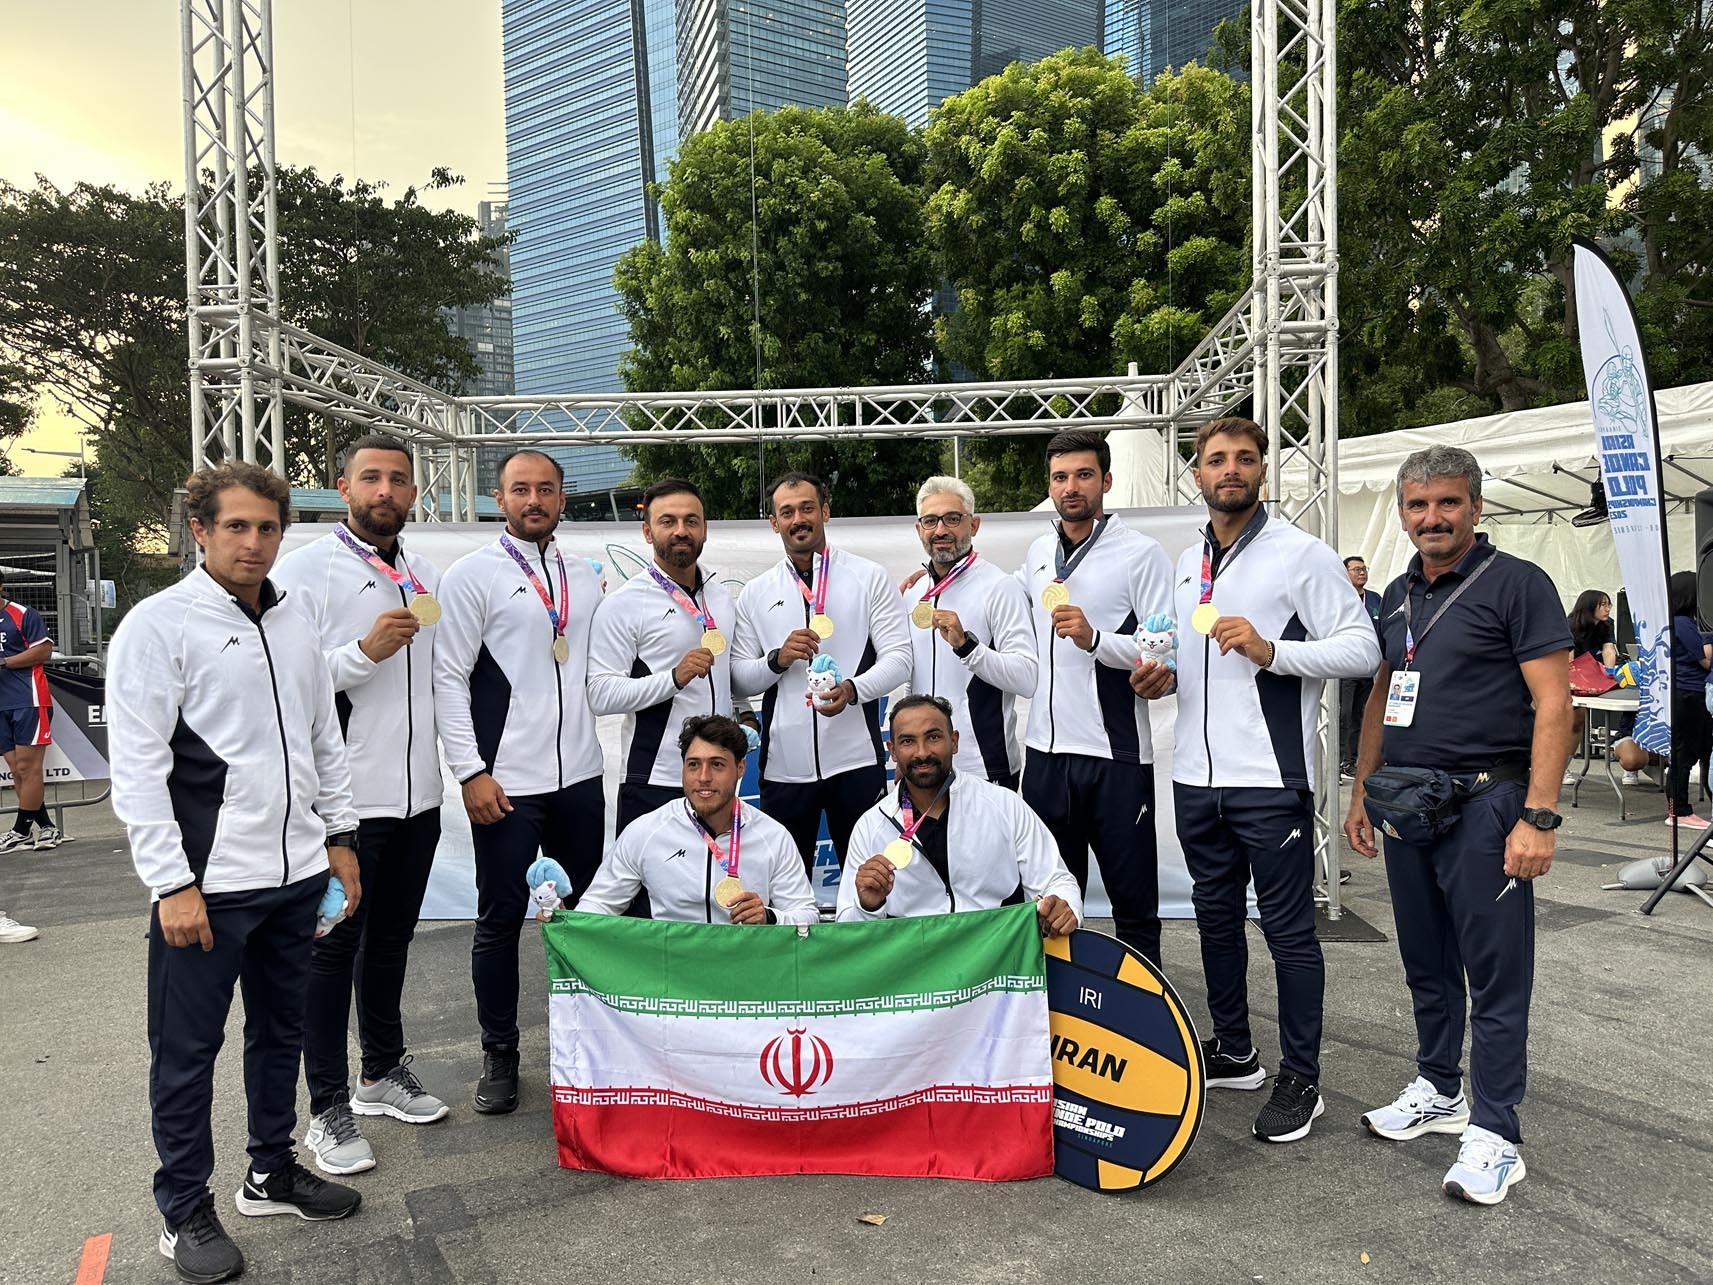 قایقرانی کانوپولو قهرمانی آسیا؛ مردان ایران قهرمان شدند